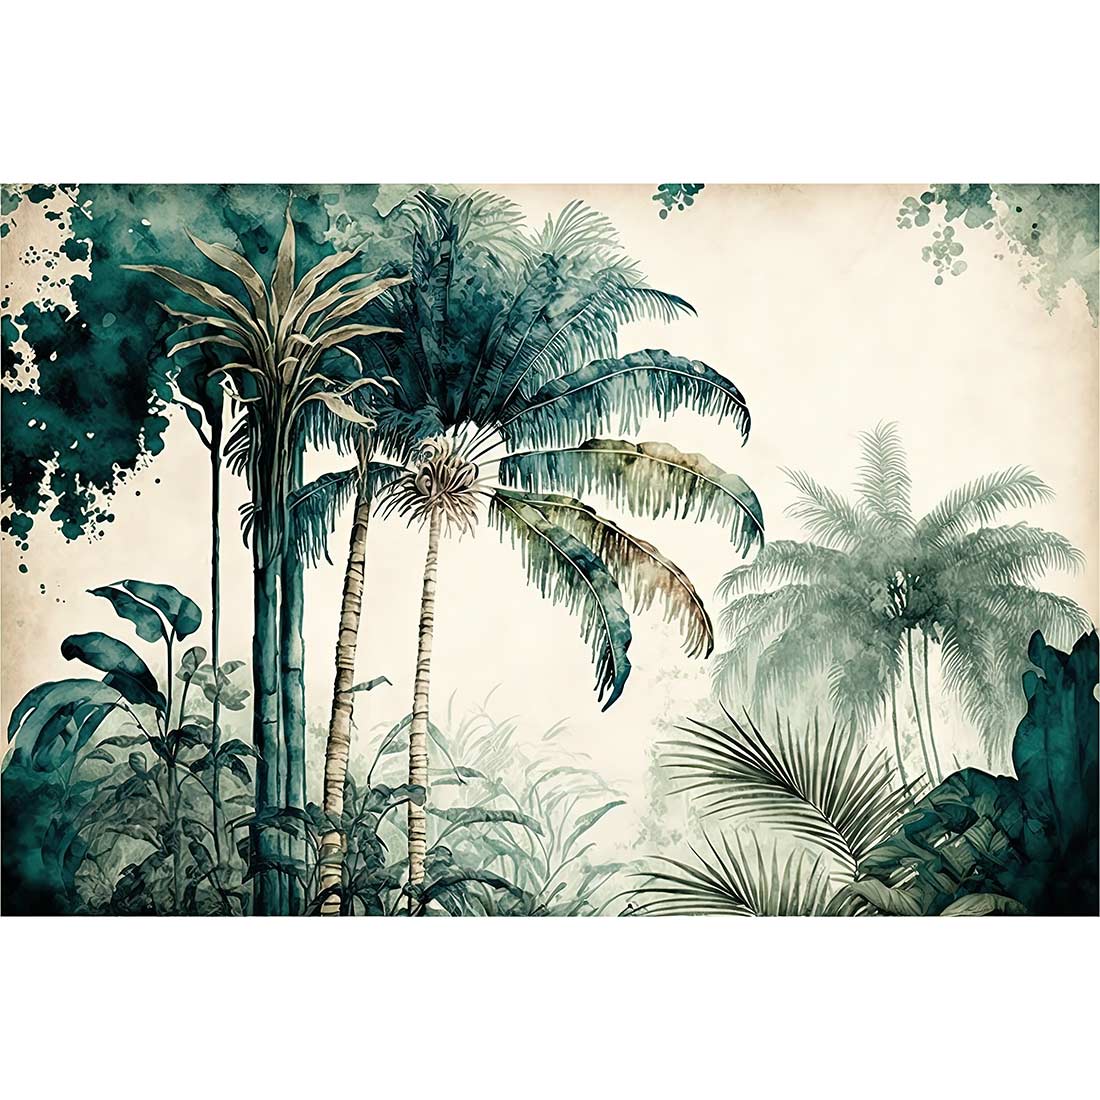 www.smallart.pl tapeta fototapeta las tropikalny dżungla malowana palmy drzewa do salonu sypialni winylowa fizelinowa lateksowa jungla palma na wymiar klej gratis (2)